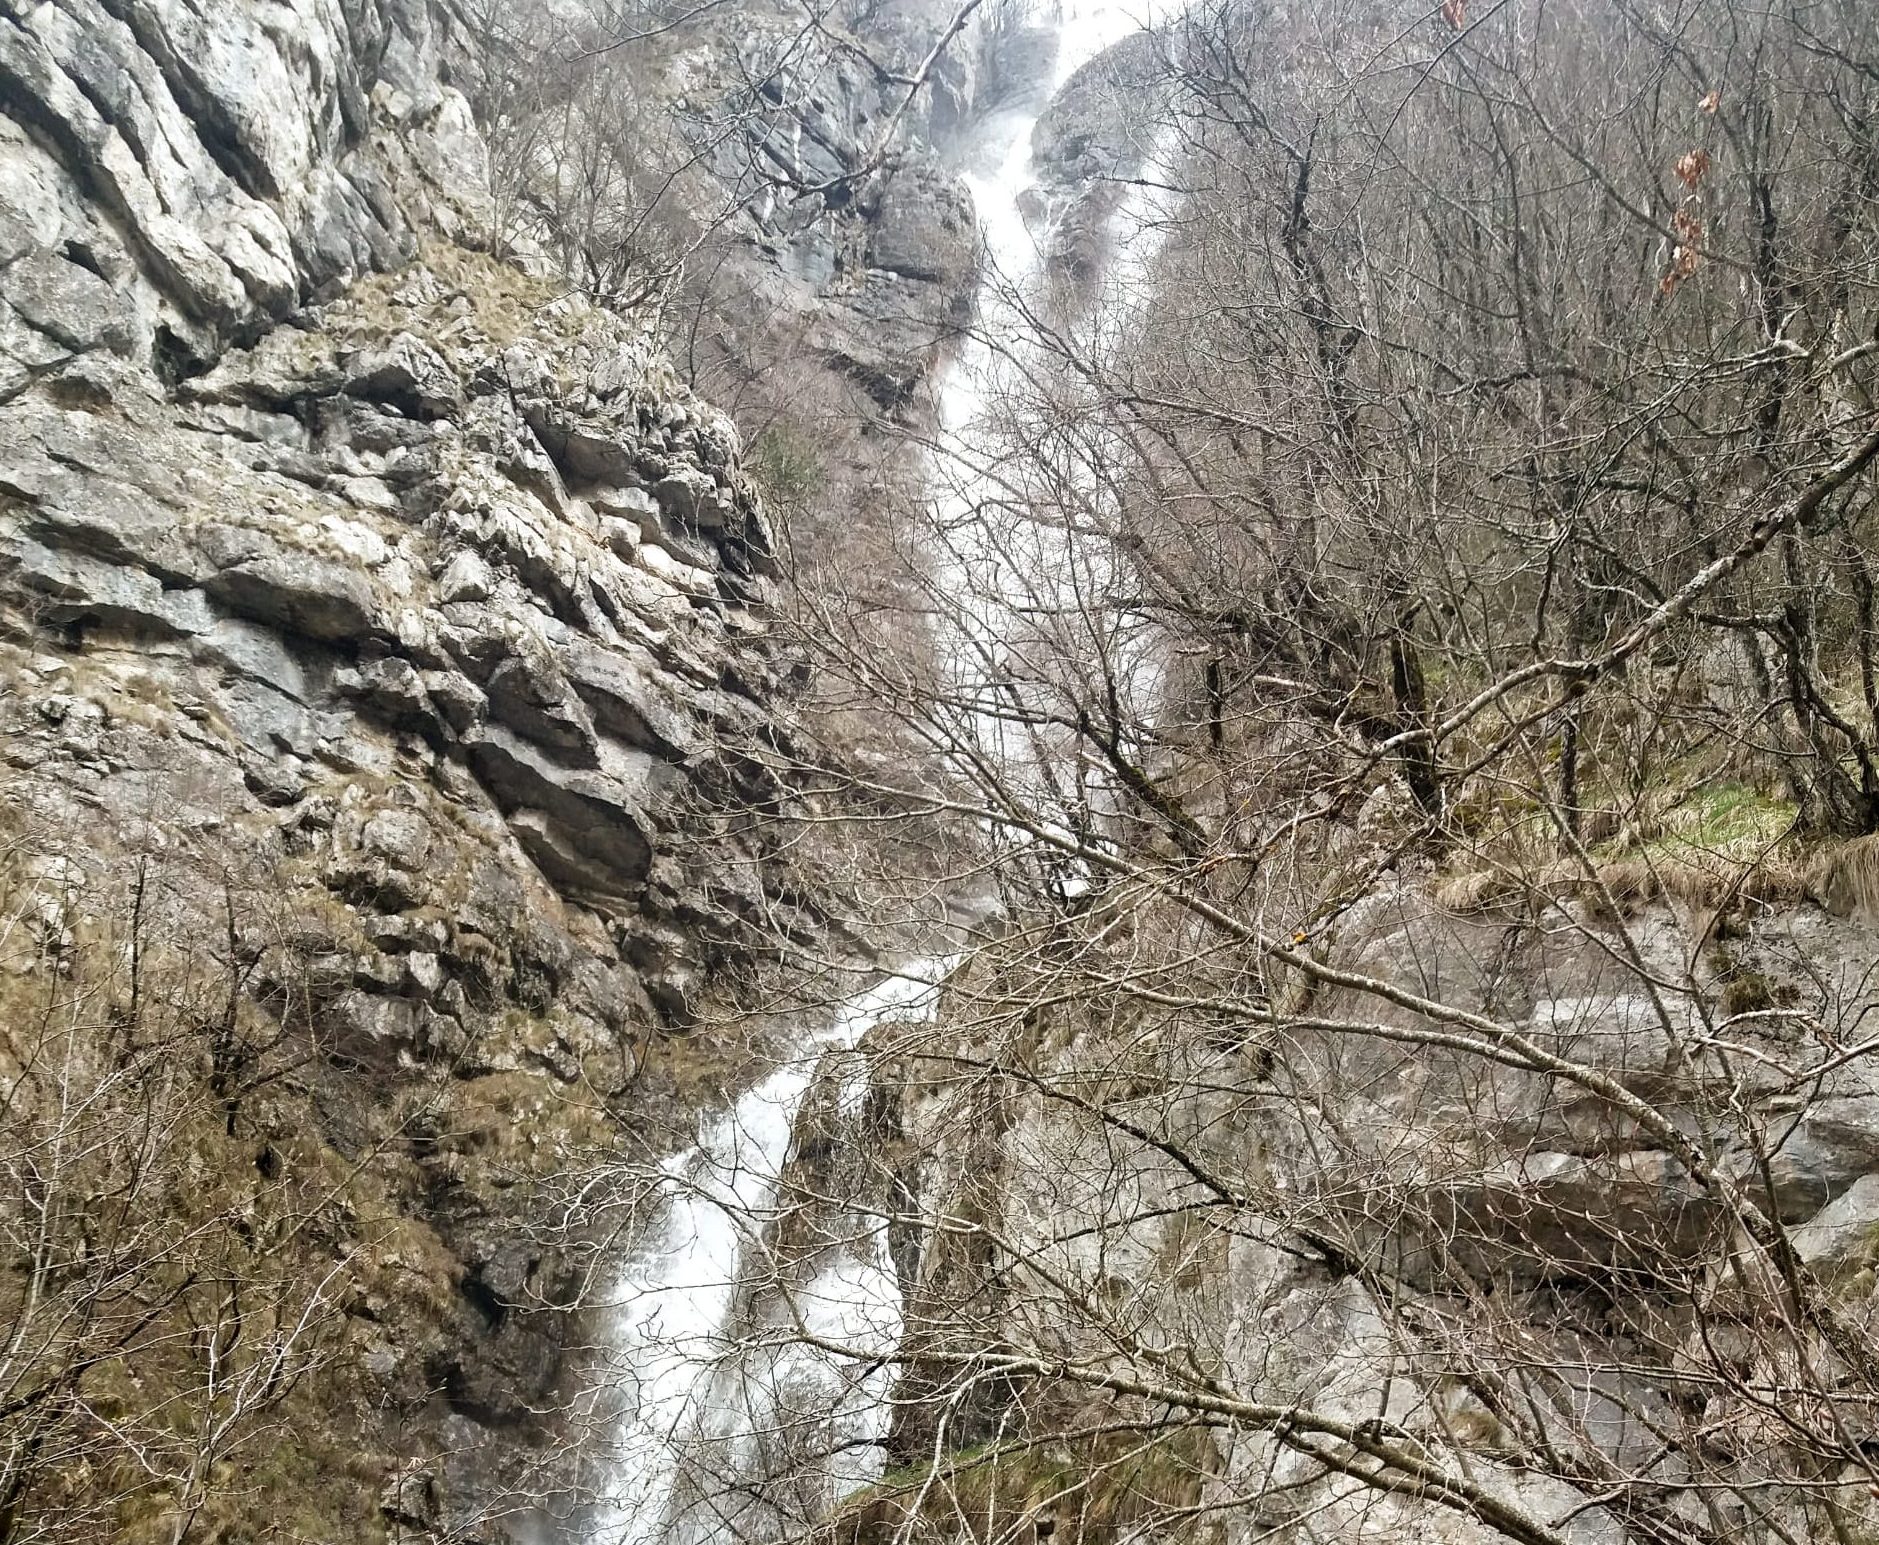  Vodopad Studenog potoka – nestvarna ljepota vidljiva s proljeća